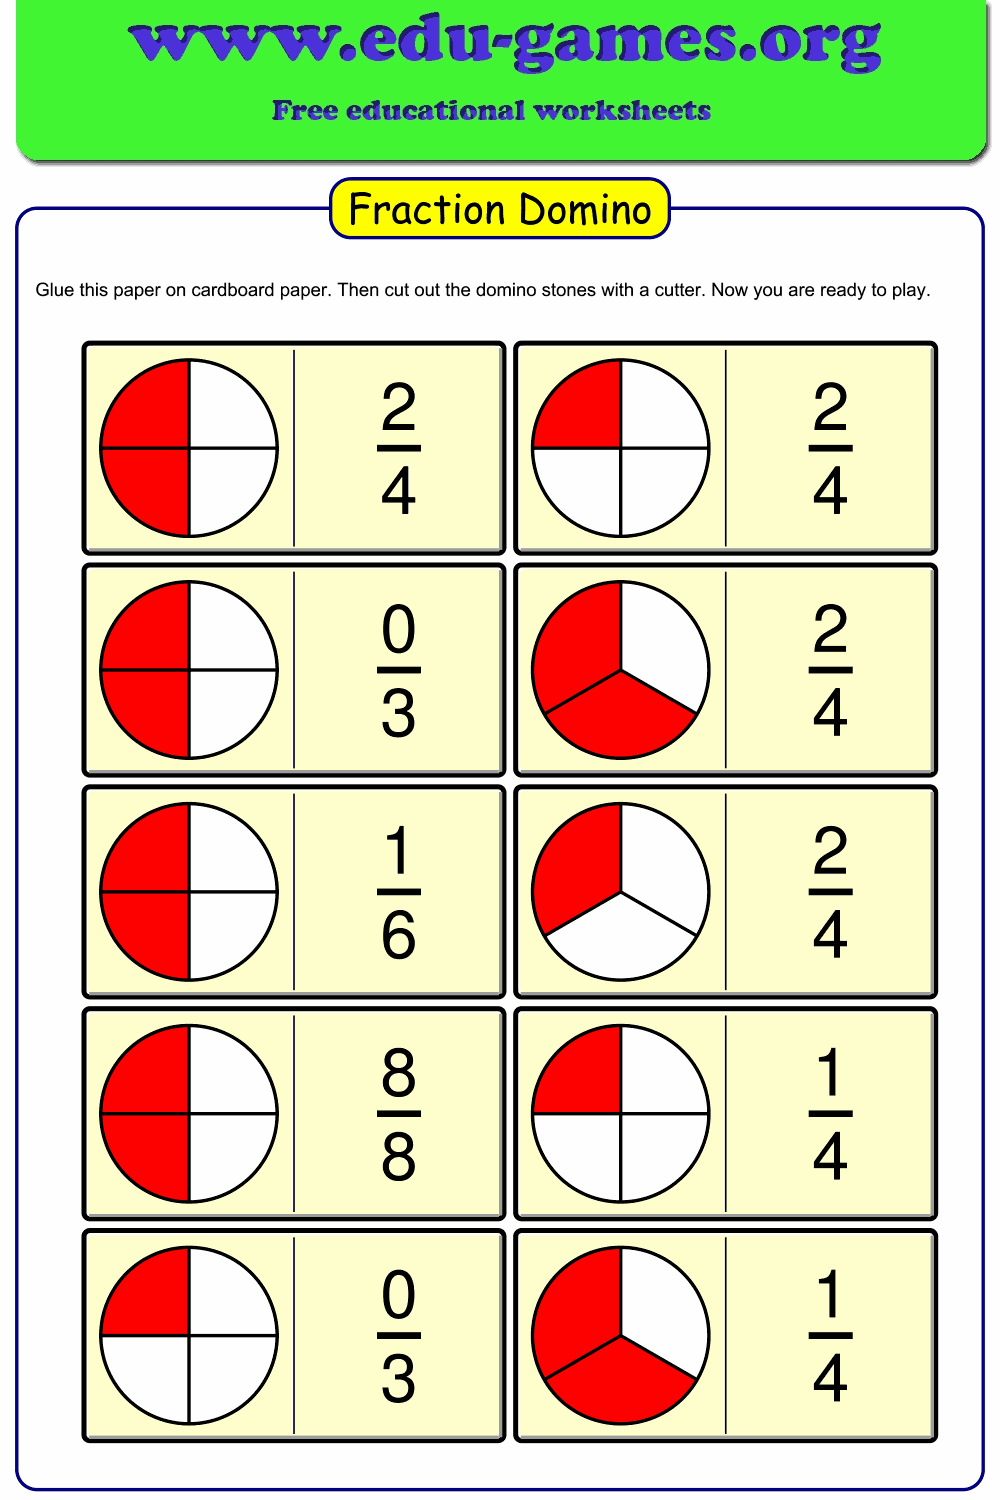 Arcobaleno Fraction Domino Dei Bambini Imparare Frazioni Matematica Gioco 